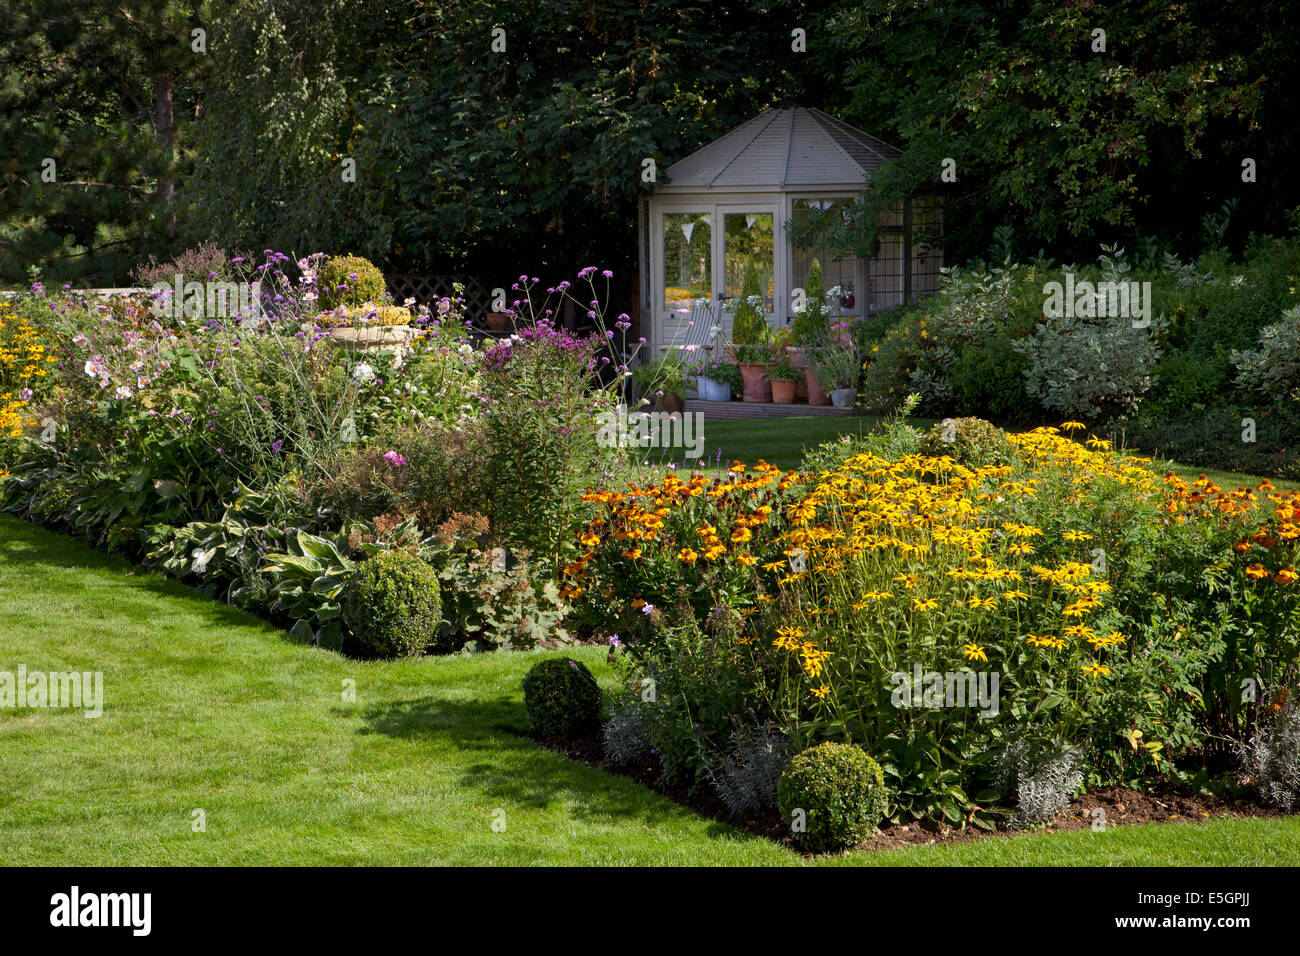 Maison en bois avec des fleurs de fin d'été pensionnaires dans un jardin anglais, Oxfordshire, Angleterre Banque D'Images